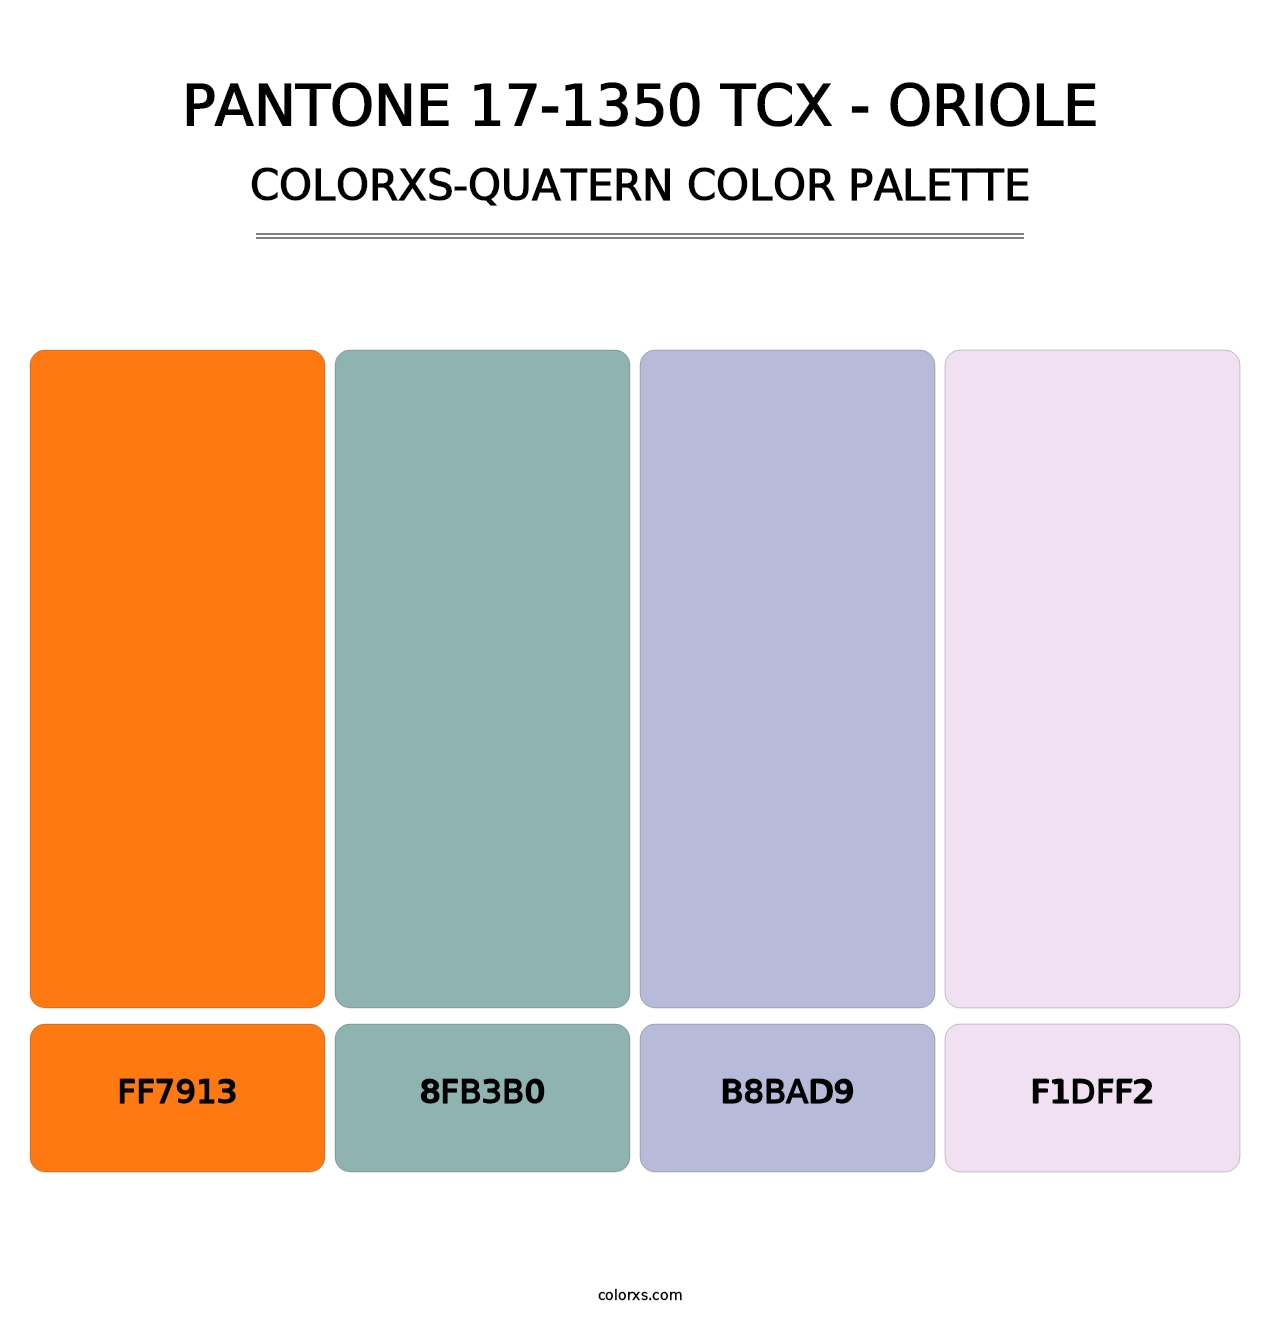 PANTONE 17-1350 TCX - Oriole - Colorxs Quatern Palette